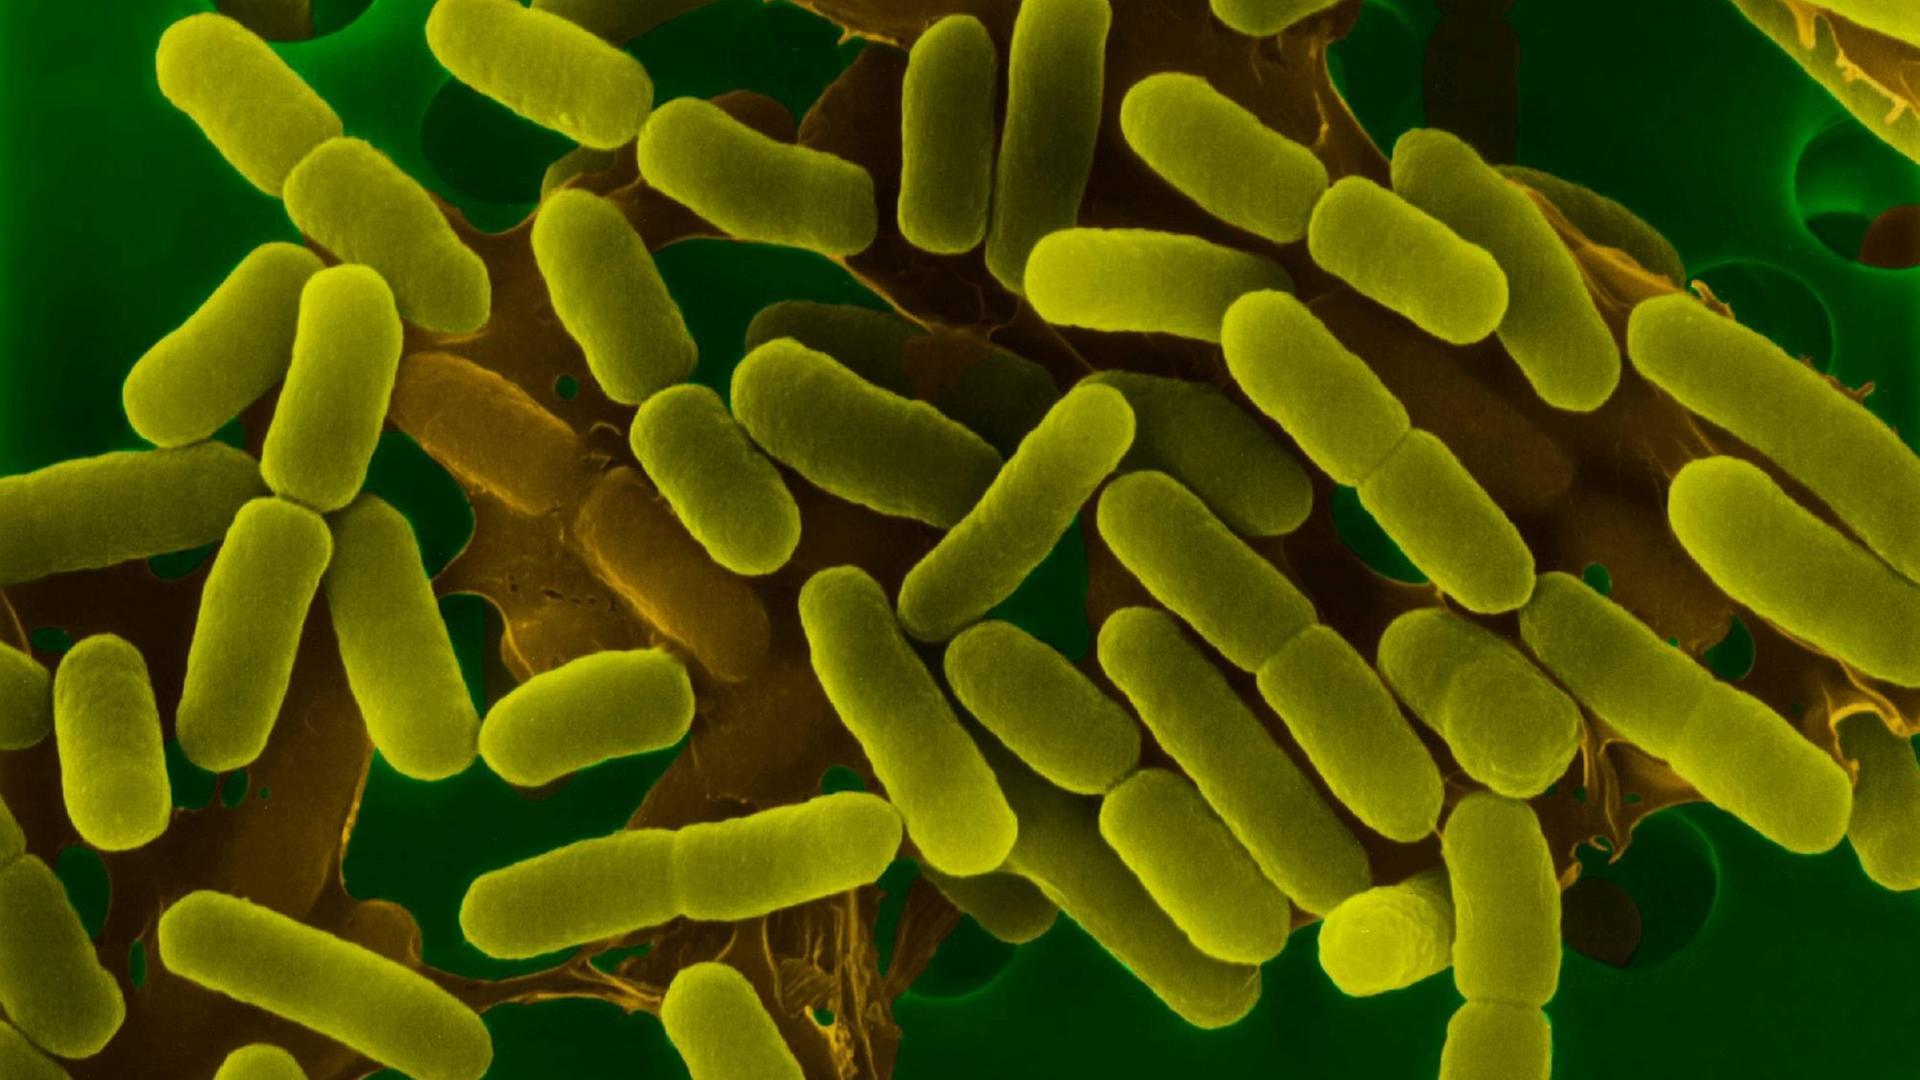 Darmbakterien Escherichia coli unter dem Elektronenmikroskop, grün eingefärbte Aufnahme